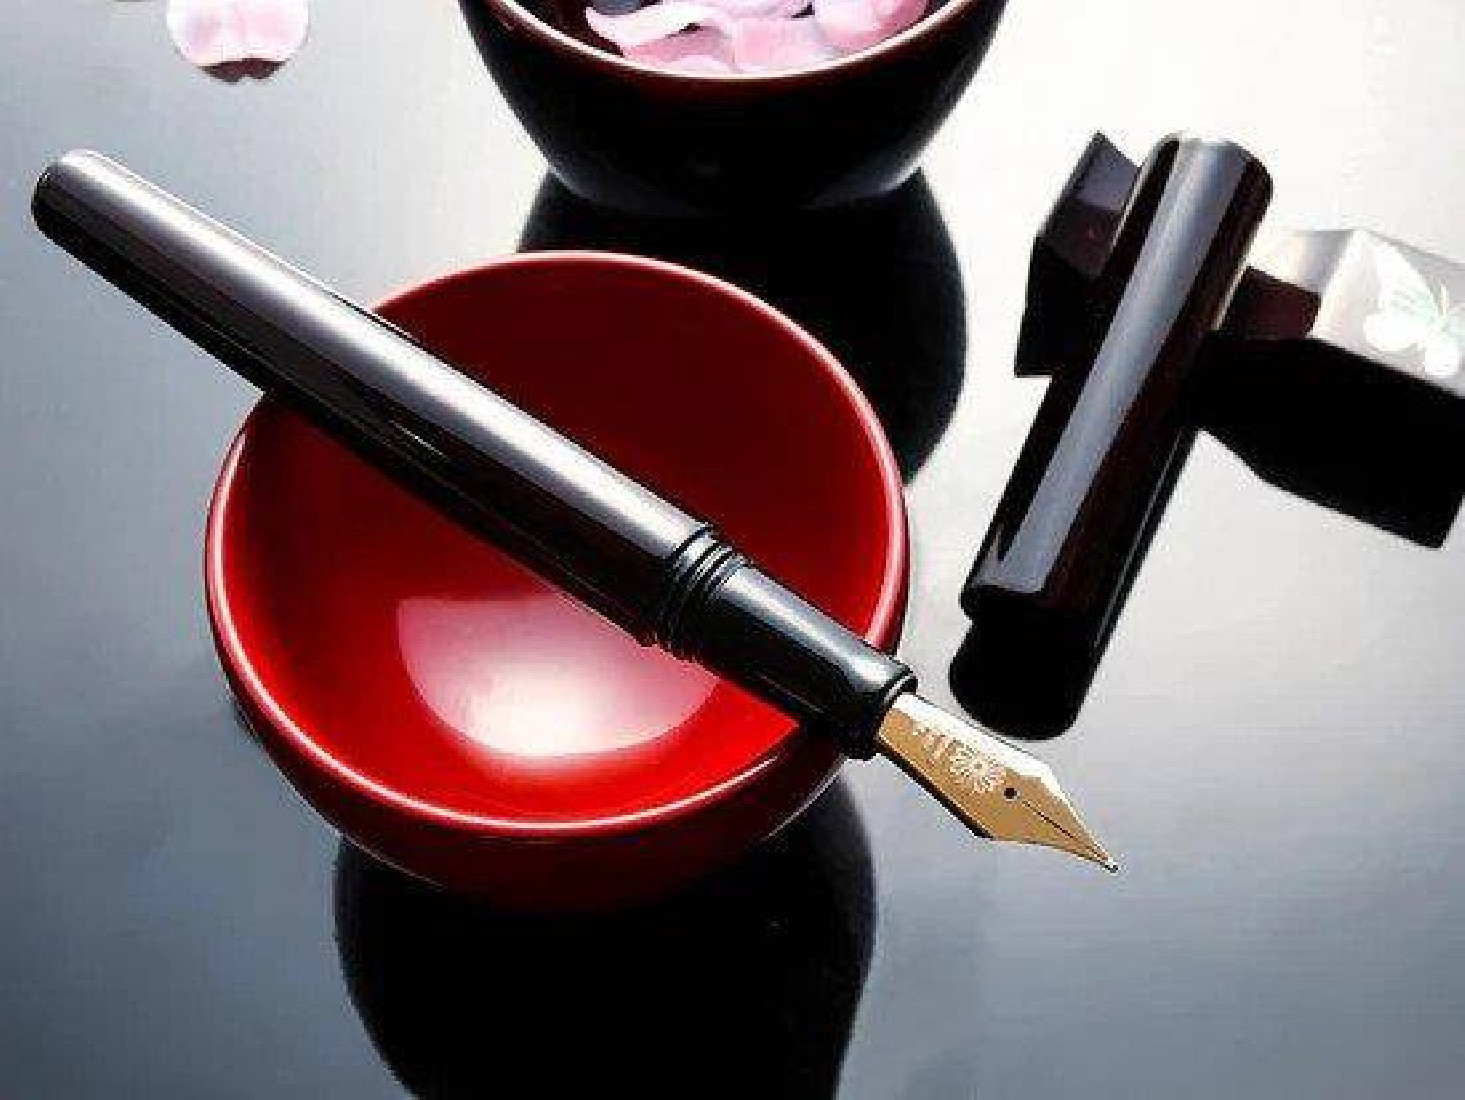 Wancher Sekai Aizu Urushi Ebony fountain pen